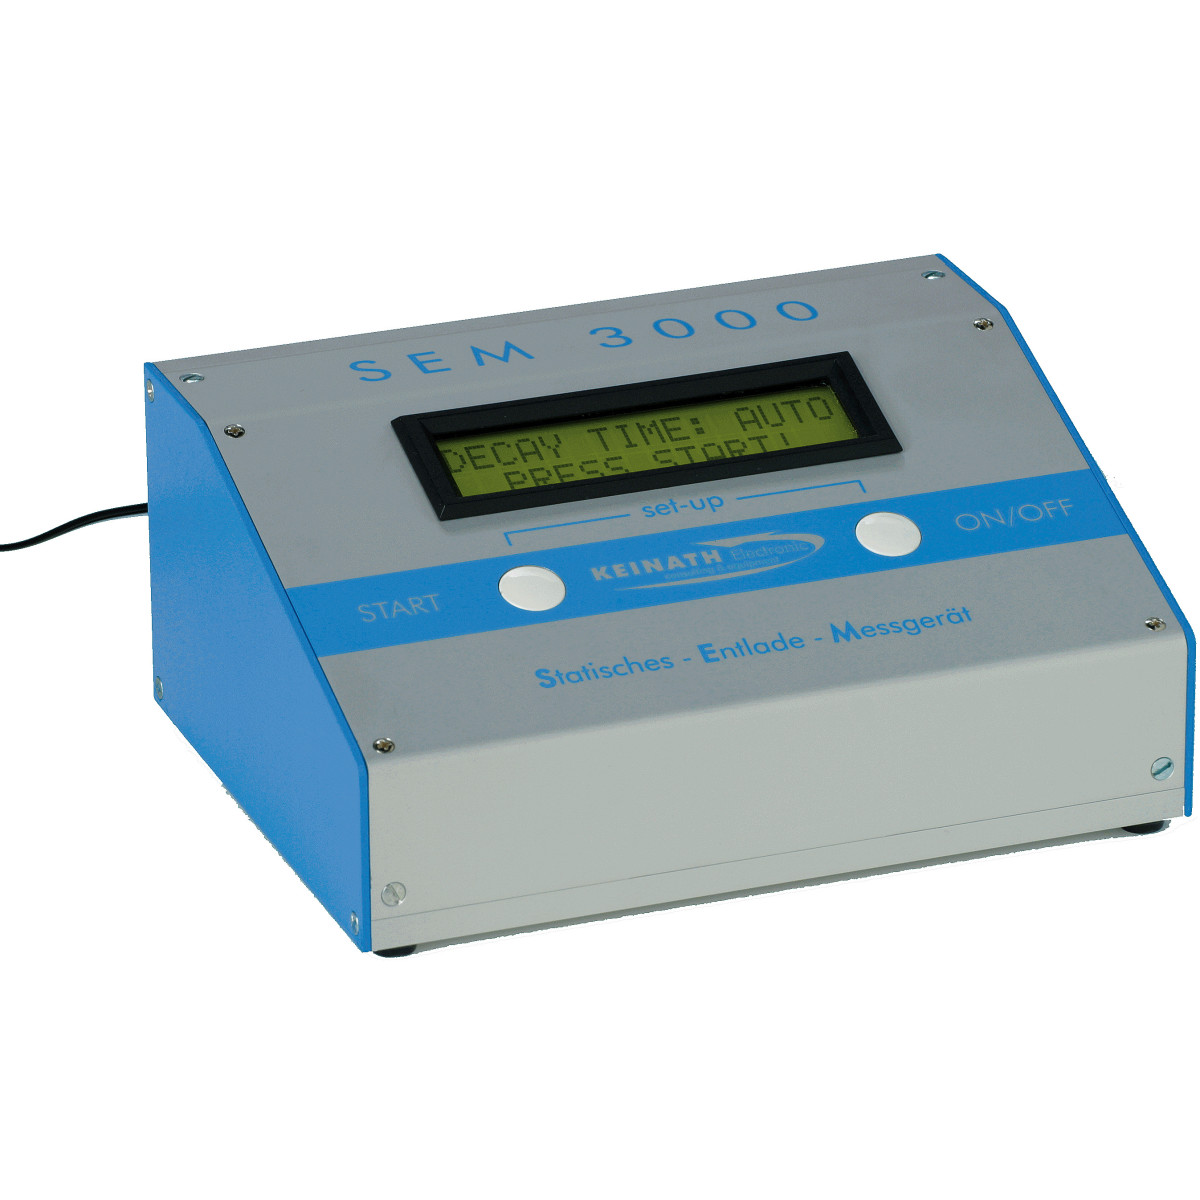 SEM 3000® - Elektrostatisches Entlademessgerät